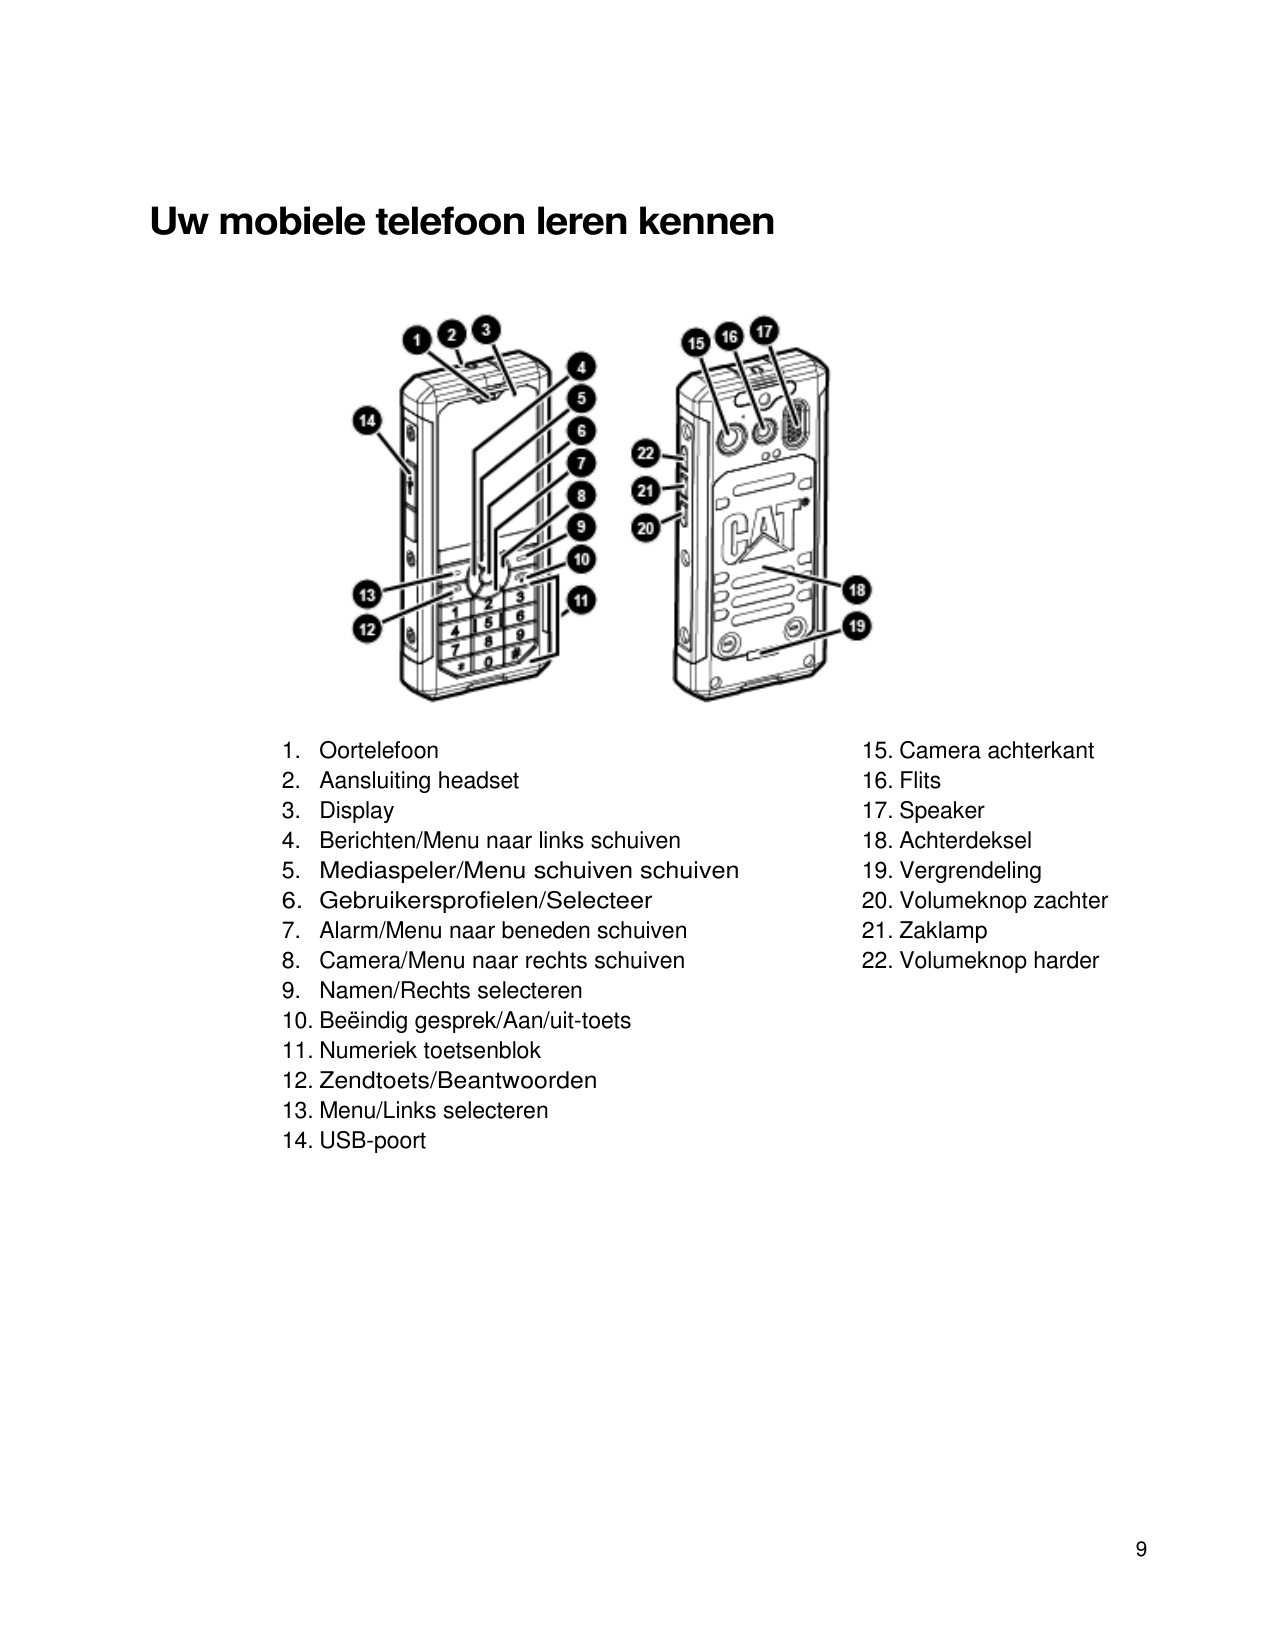 Uw mobiele telefoon leren kennen1. OortelefoonOortelefoonheadset2. Aansluiting3. Display4. Berichten/Menu naar links schuiven5. 